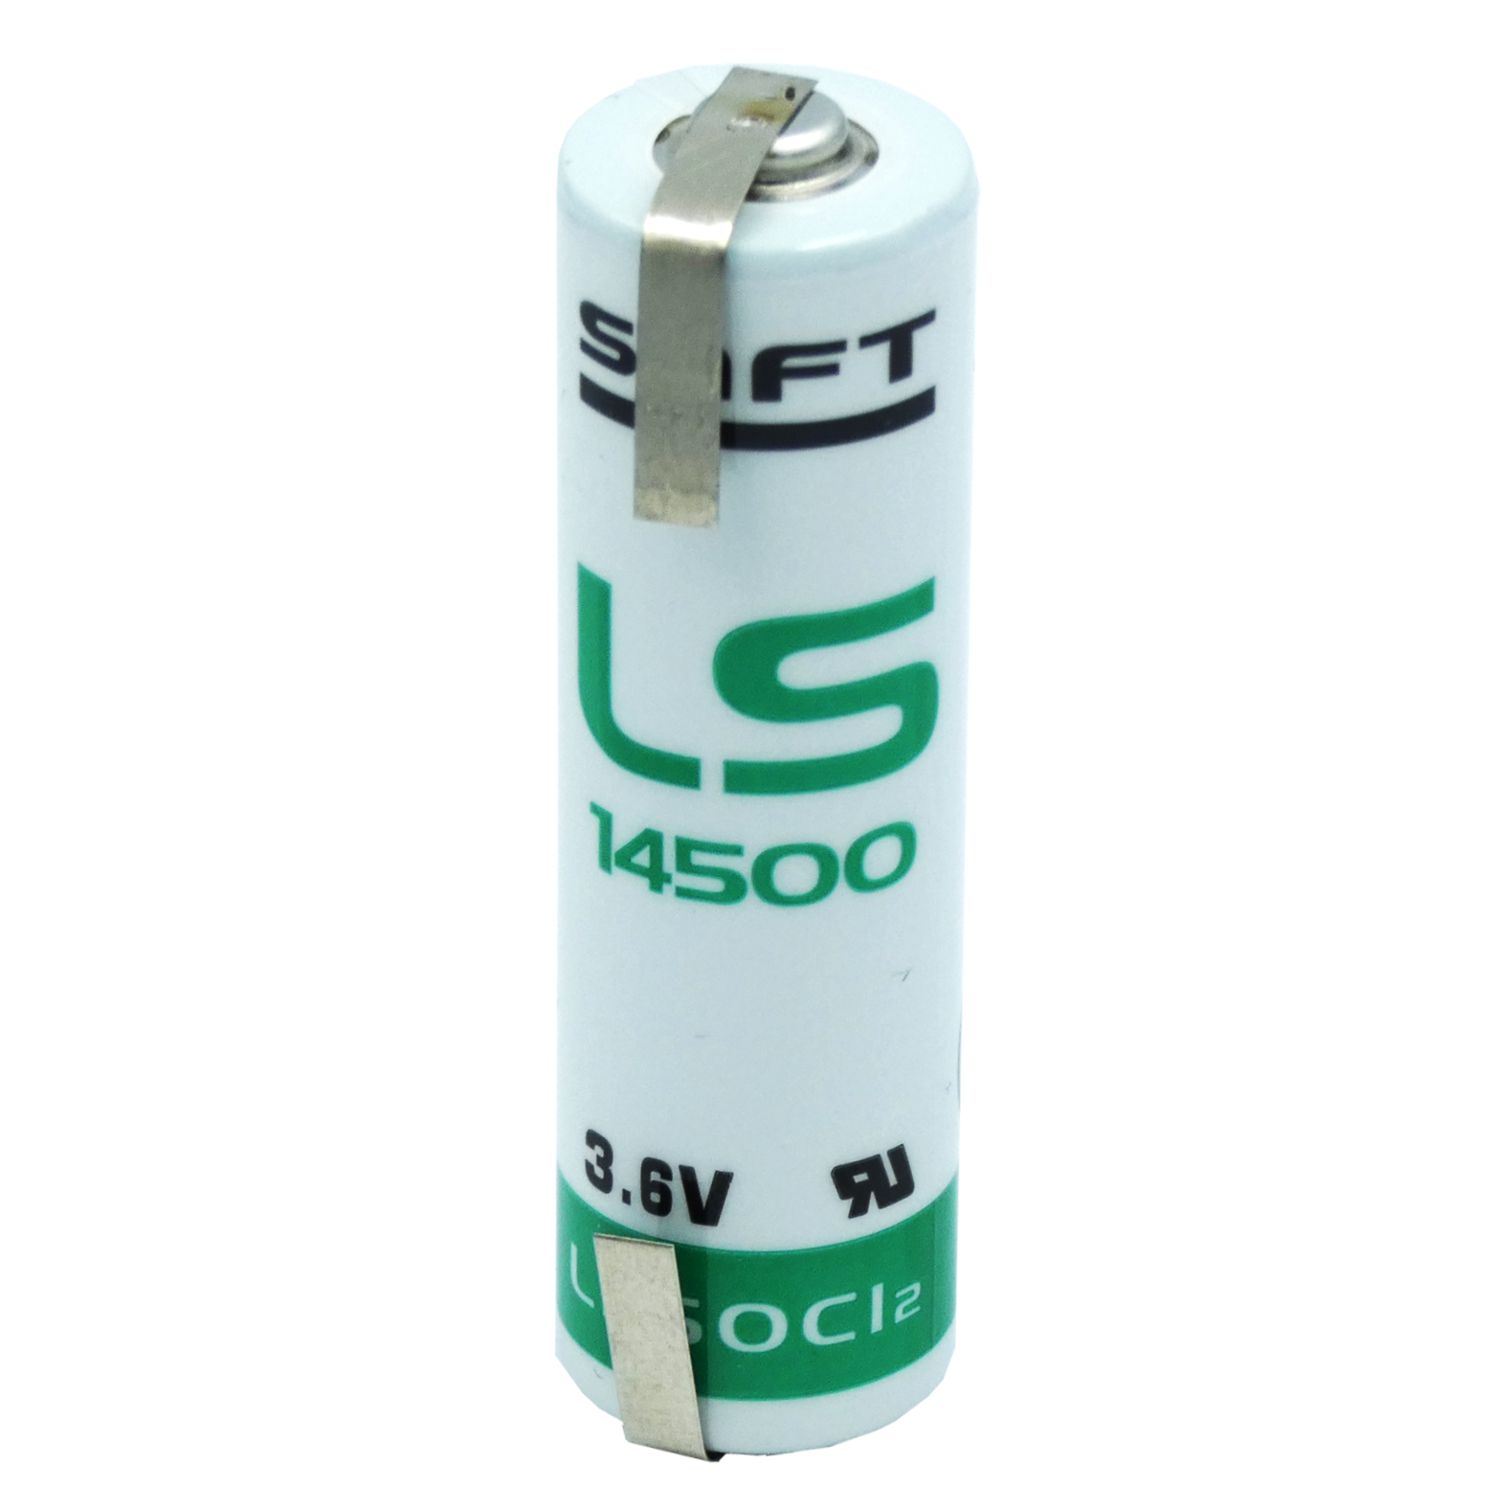 Saft Lithium Batterie LS 14500 Mignon 3,6Volt AA mit Lötfahnen in U-Form